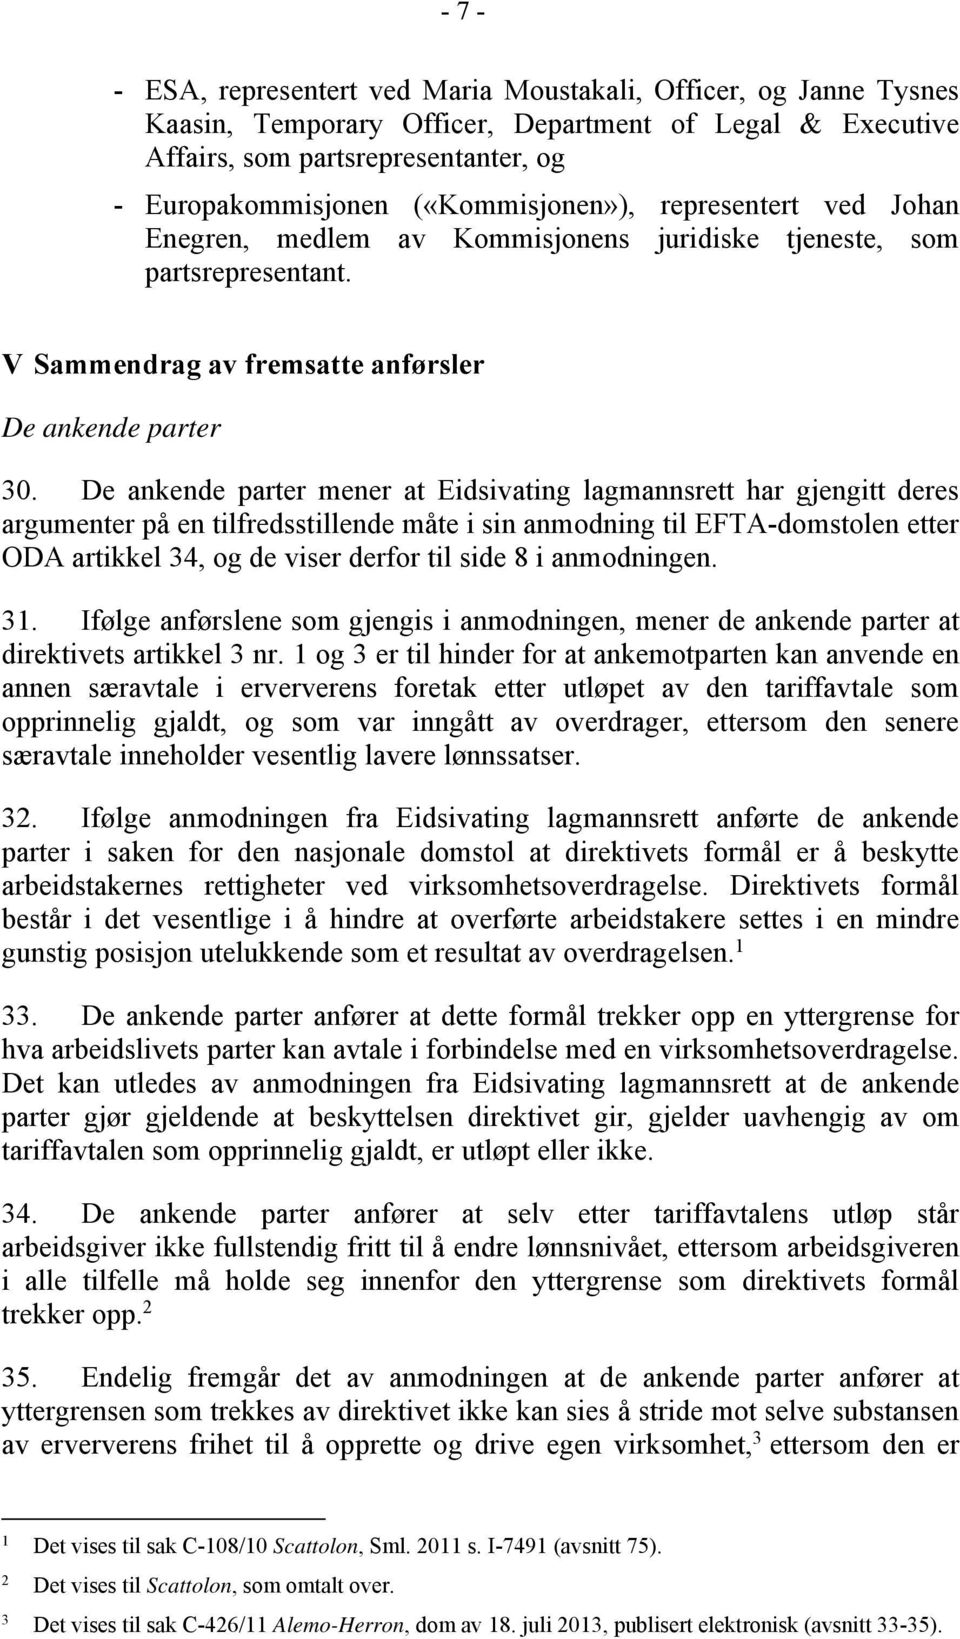 De ankende parter mener at Eidsivating lagmannsrett har gjengitt deres argumenter på en tilfredsstillende måte i sin anmodning til EFTA-domstolen etter ODA artikkel 34, og de viser derfor til side 8